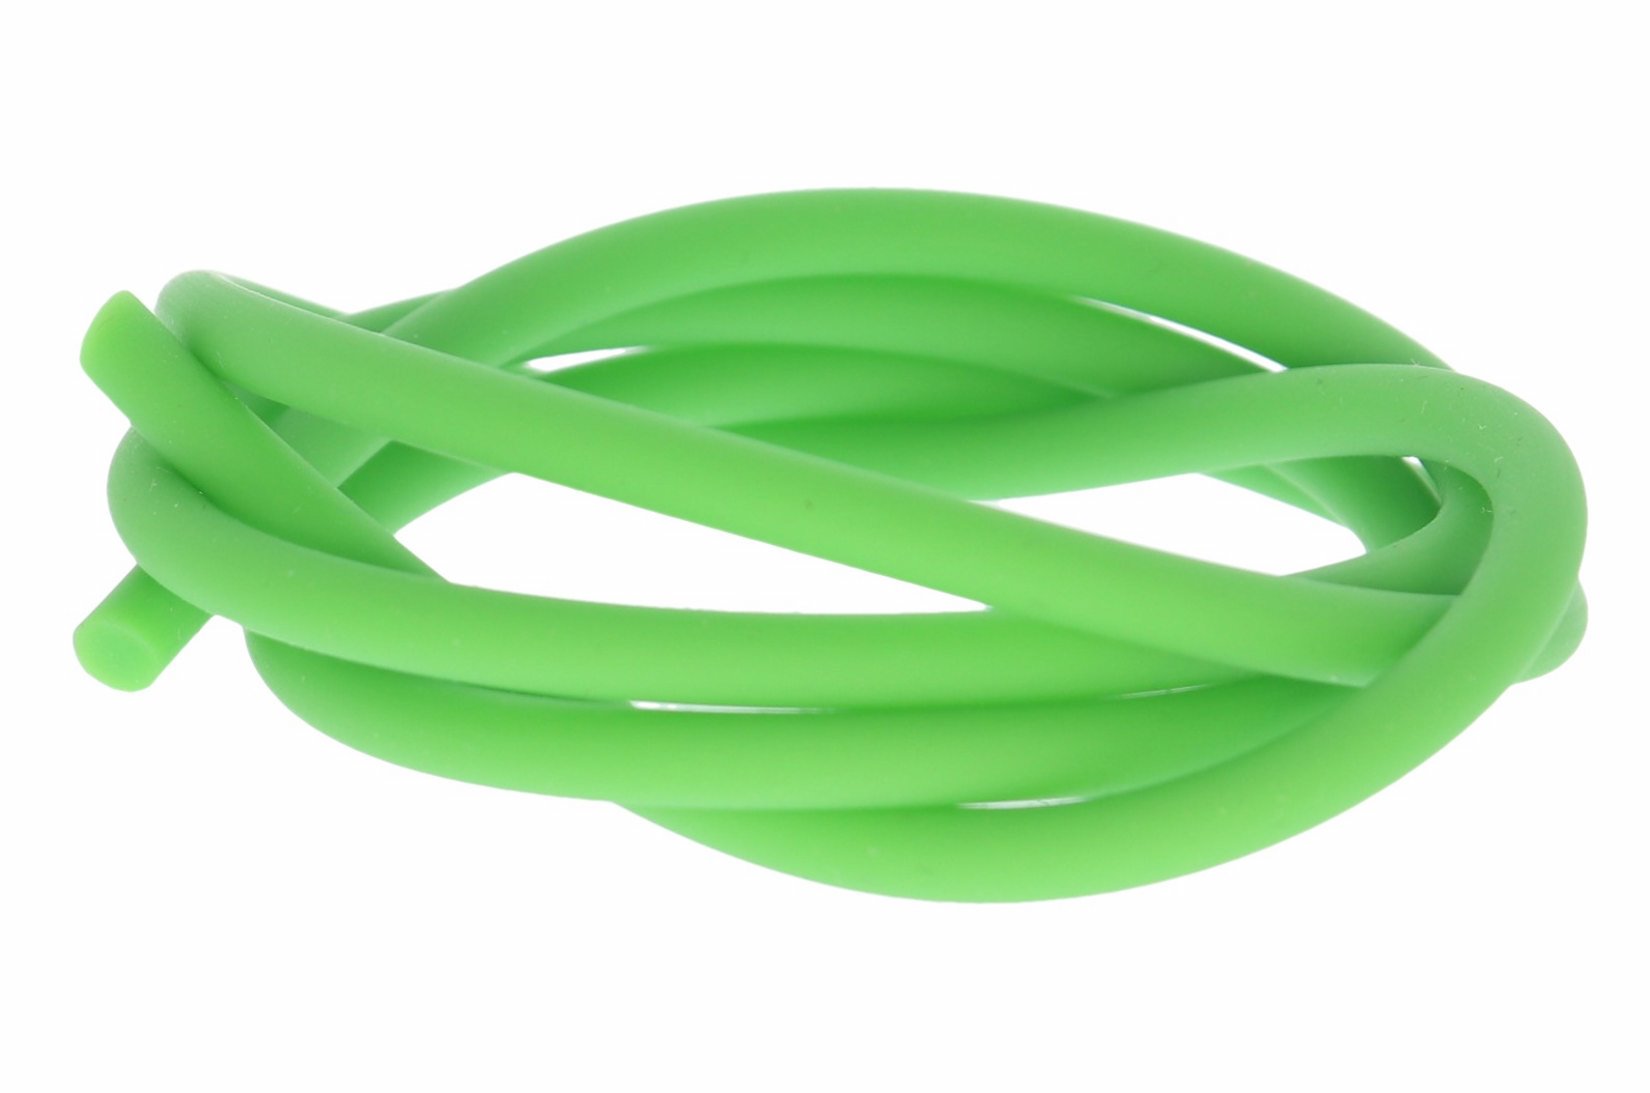 Kautschukband 3.0mm Ø 100cm grün - Kautschuk Halsband